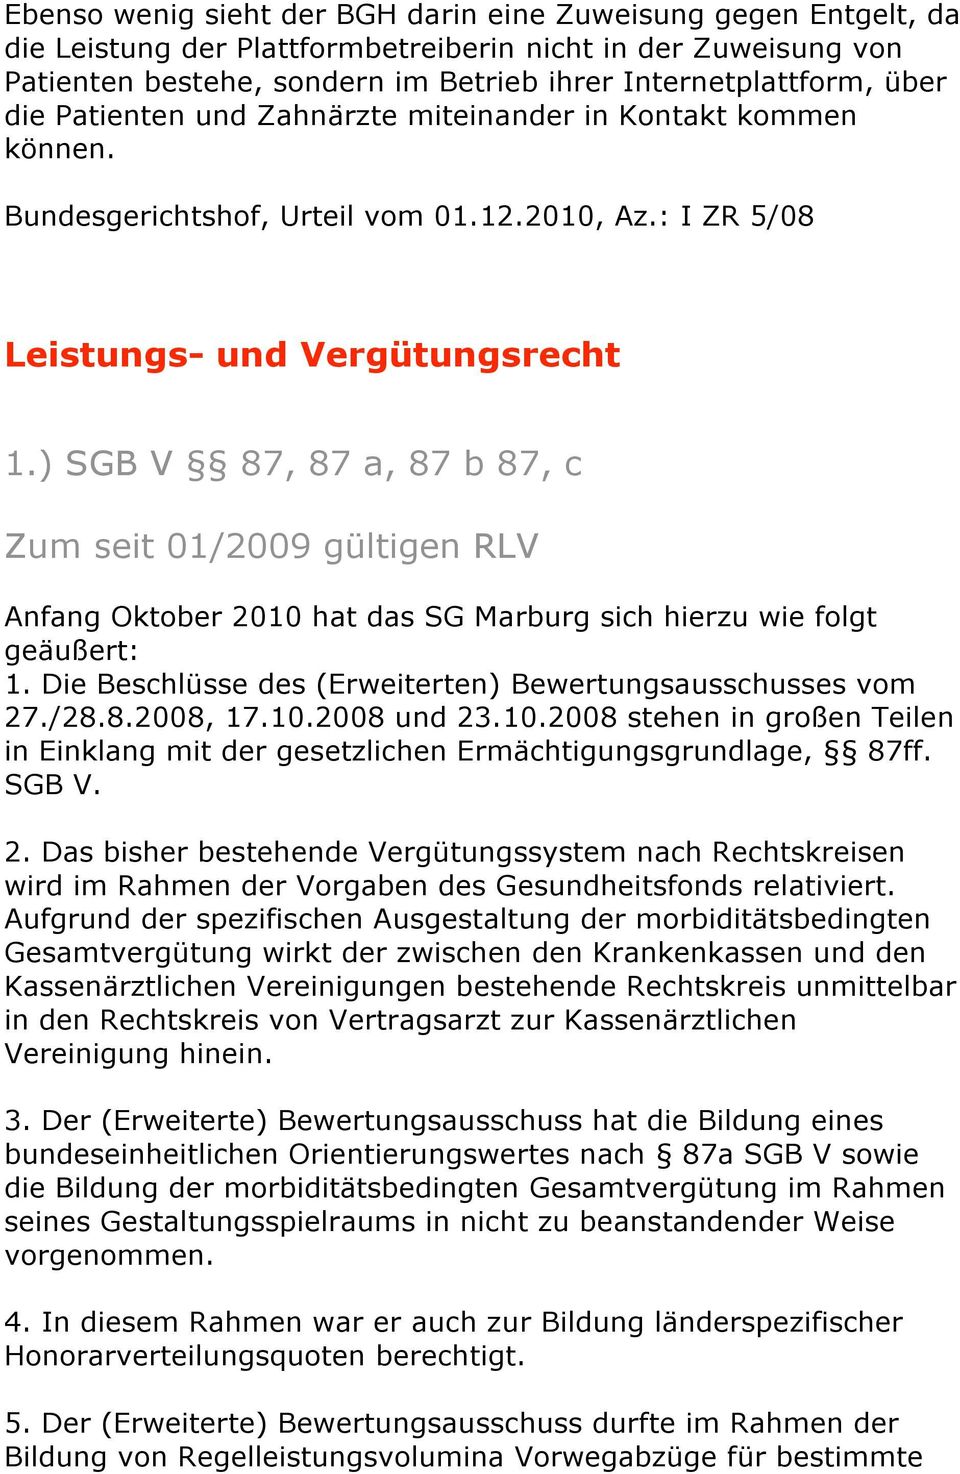 ) SGB V 87, 87 a, 87 b 87, c Zum seit 01/2009 gültigen RLV Anfang Oktober 2010 hat das SG Marburg sich hierzu wie folgt geäußert: 1. Die Beschlüsse des (Erweiterten) Bewertungsausschusses vom 27./28.